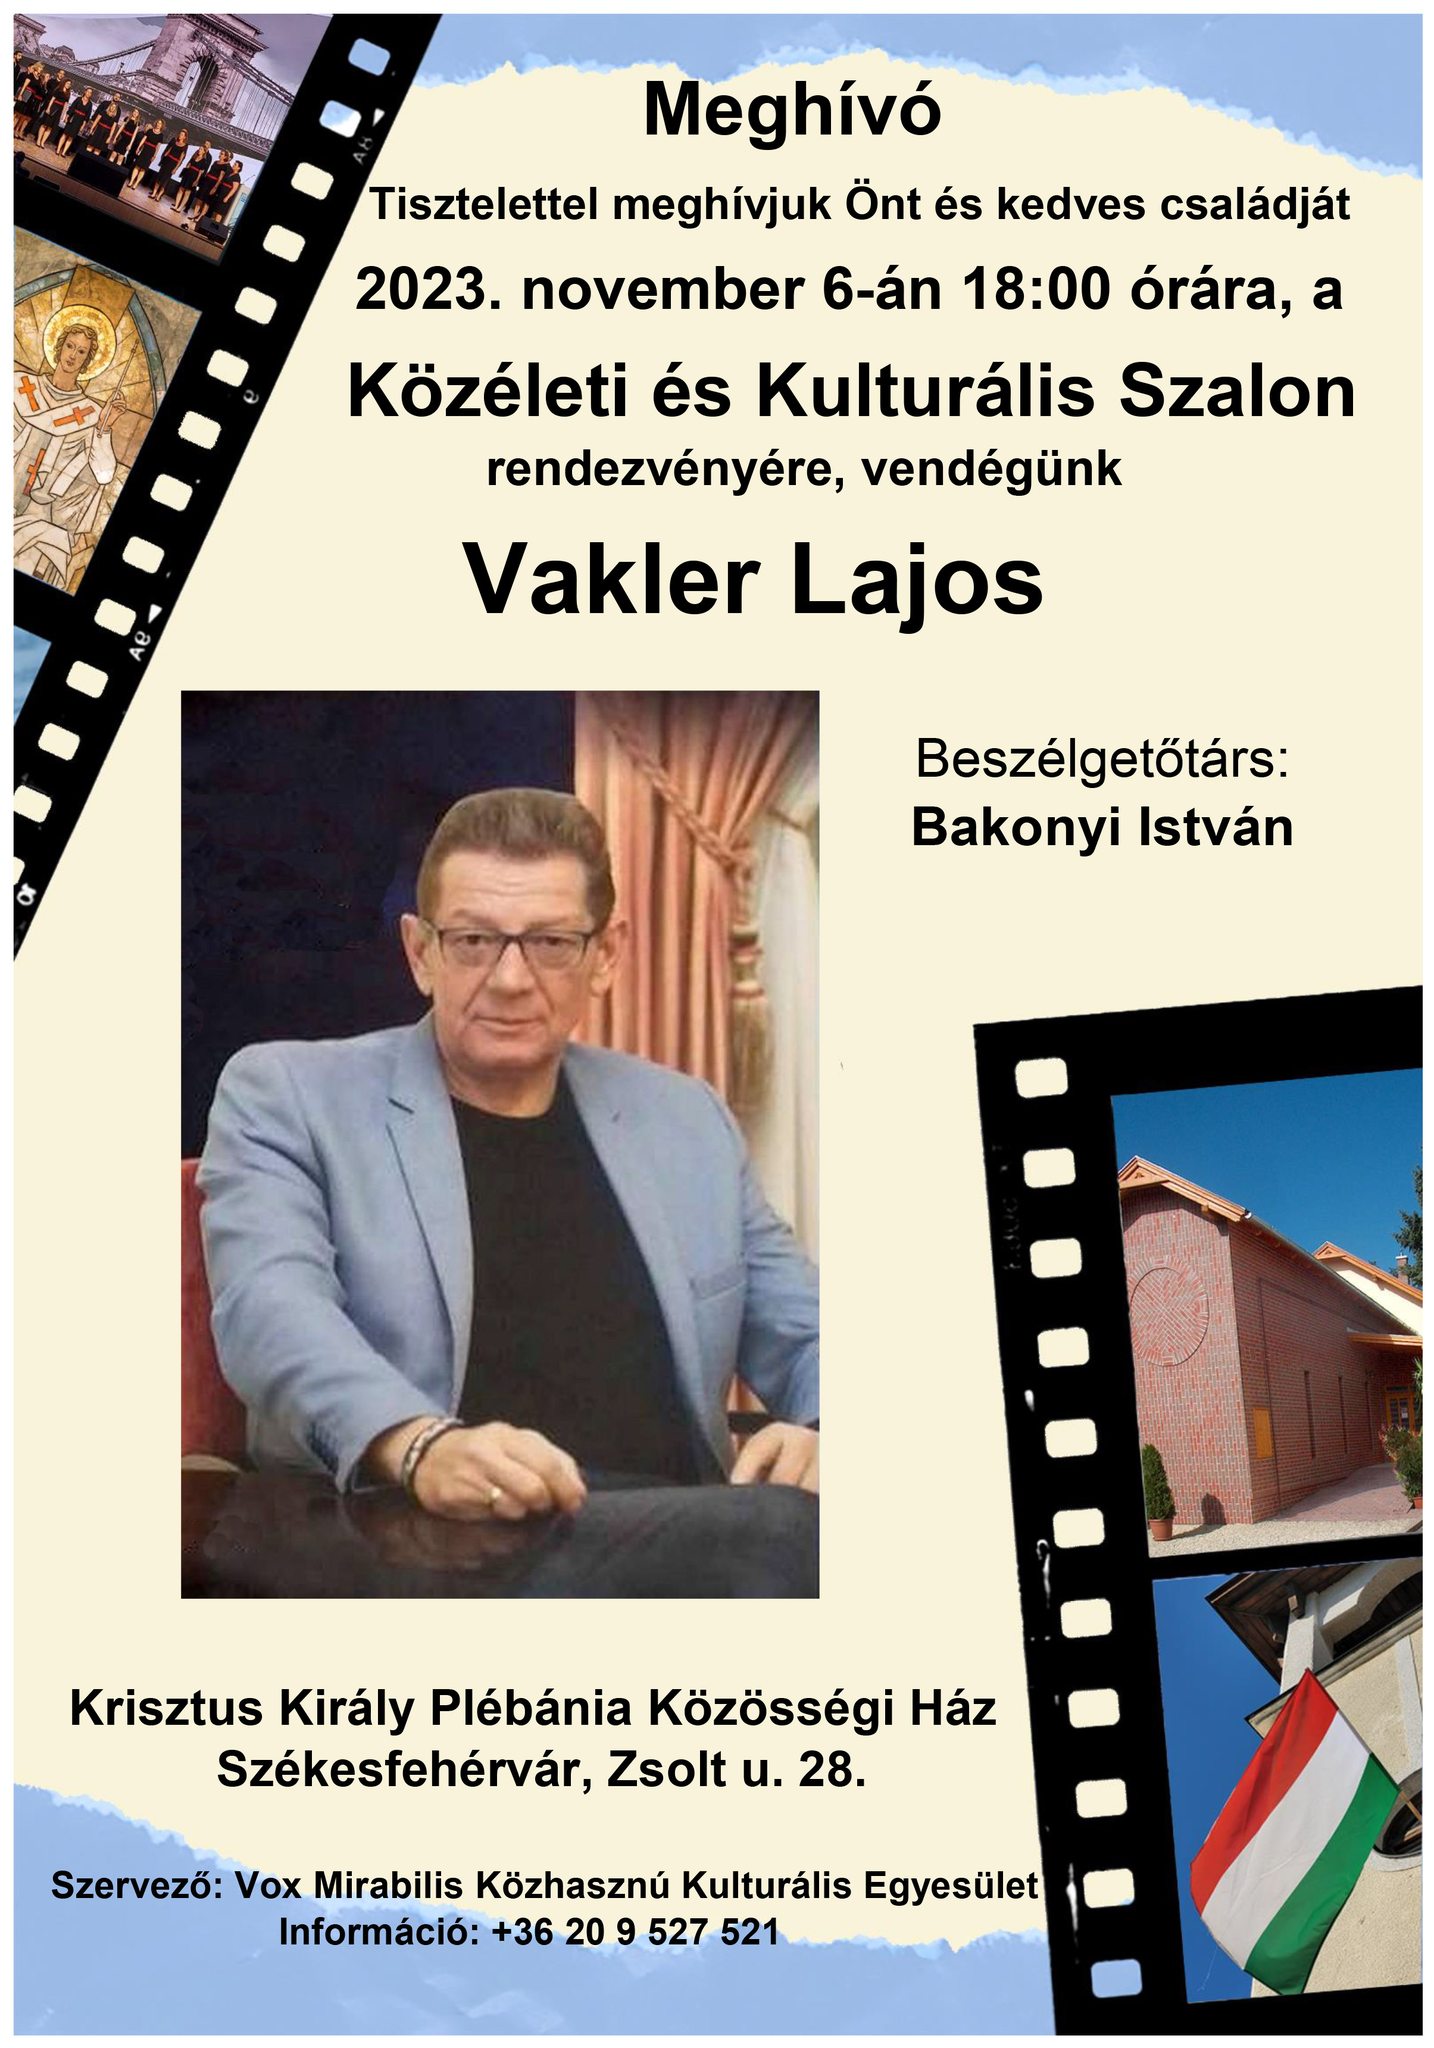 Vakler Lajos lesz a Közéleti és Kulturális Szalon vendége november 6-án